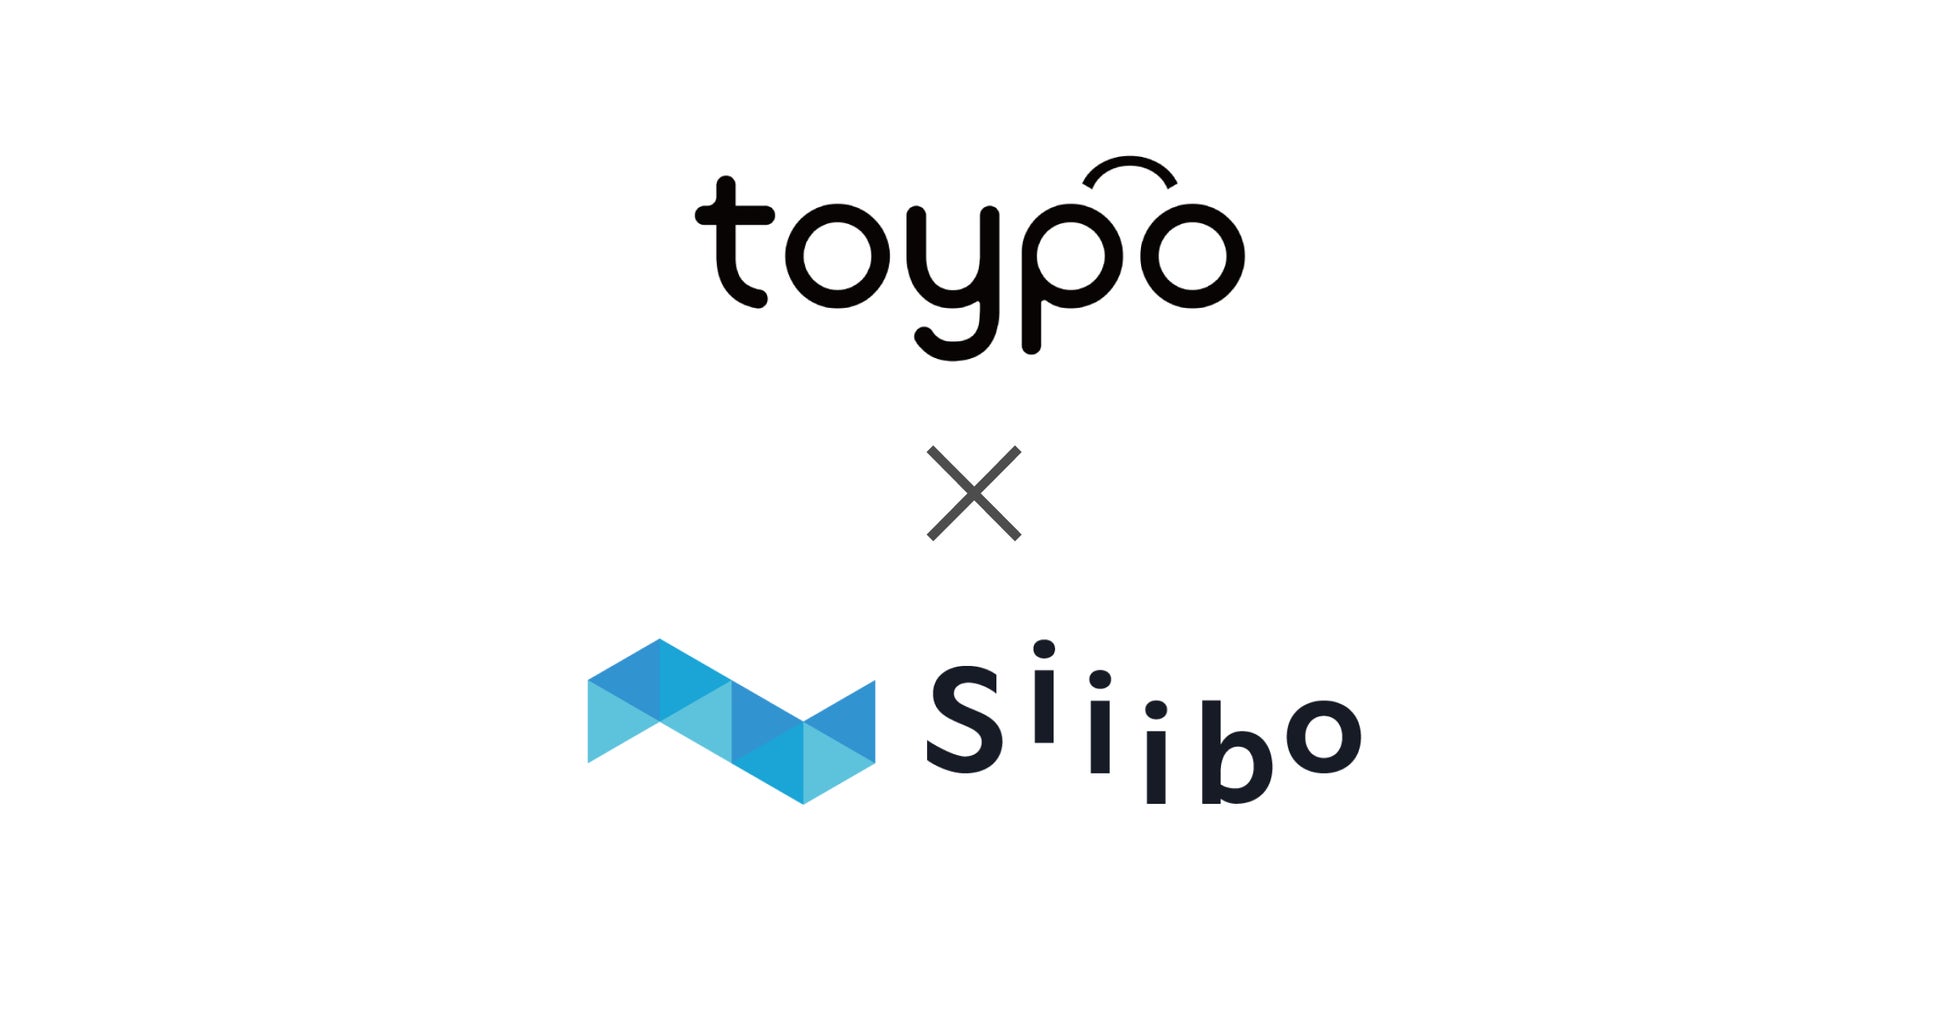 アプリを活用した店舗向けリピーター集客サービスtoypoを提供するトイポが、Siiibo証券を活用し社債発行